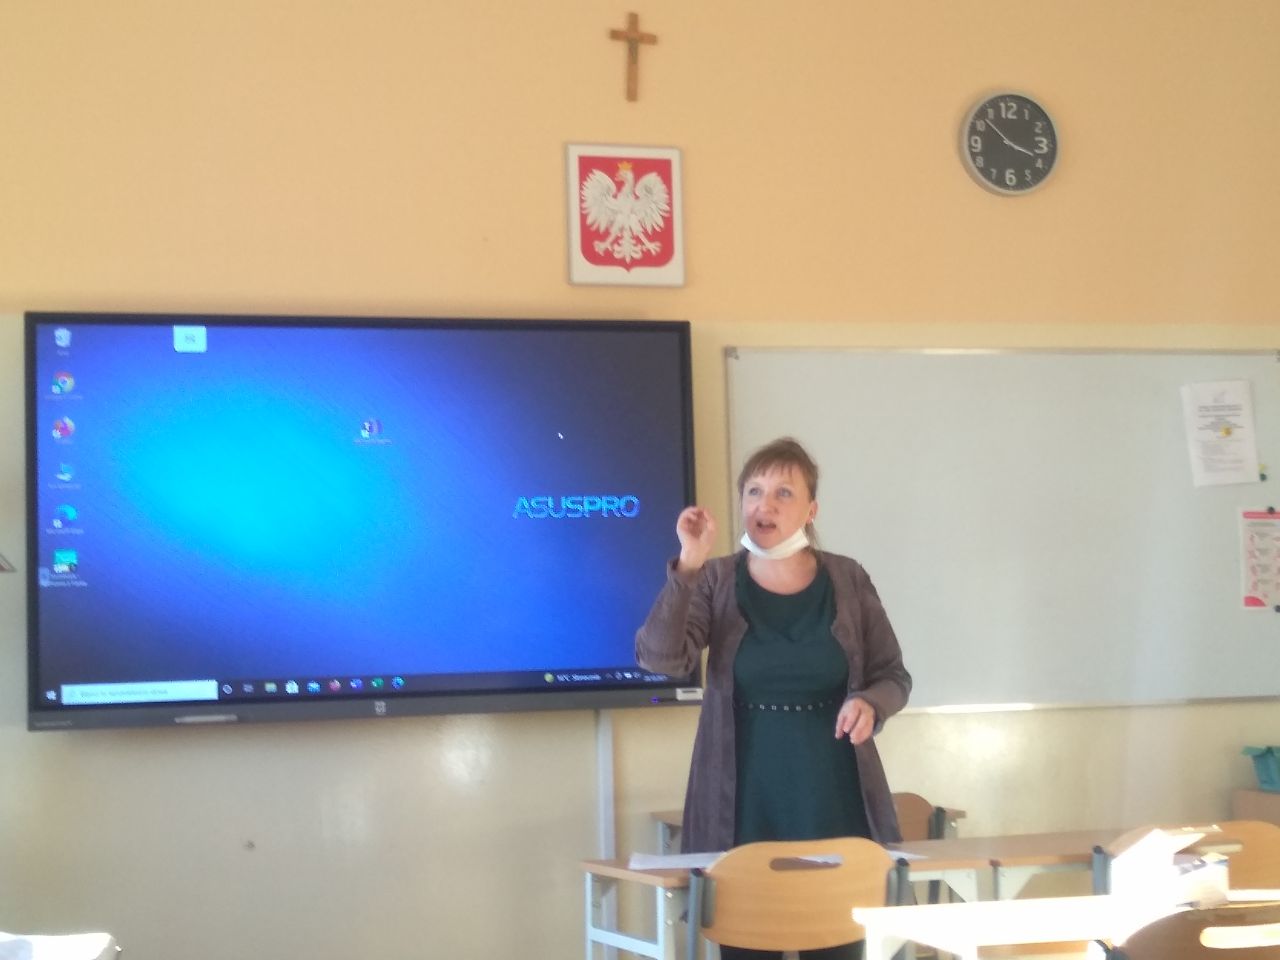 Szkolenie Rady Pedagogicznej Zespołu Szkolno-Przedszkolnego im. Jana Pawła II w Jaskrowie